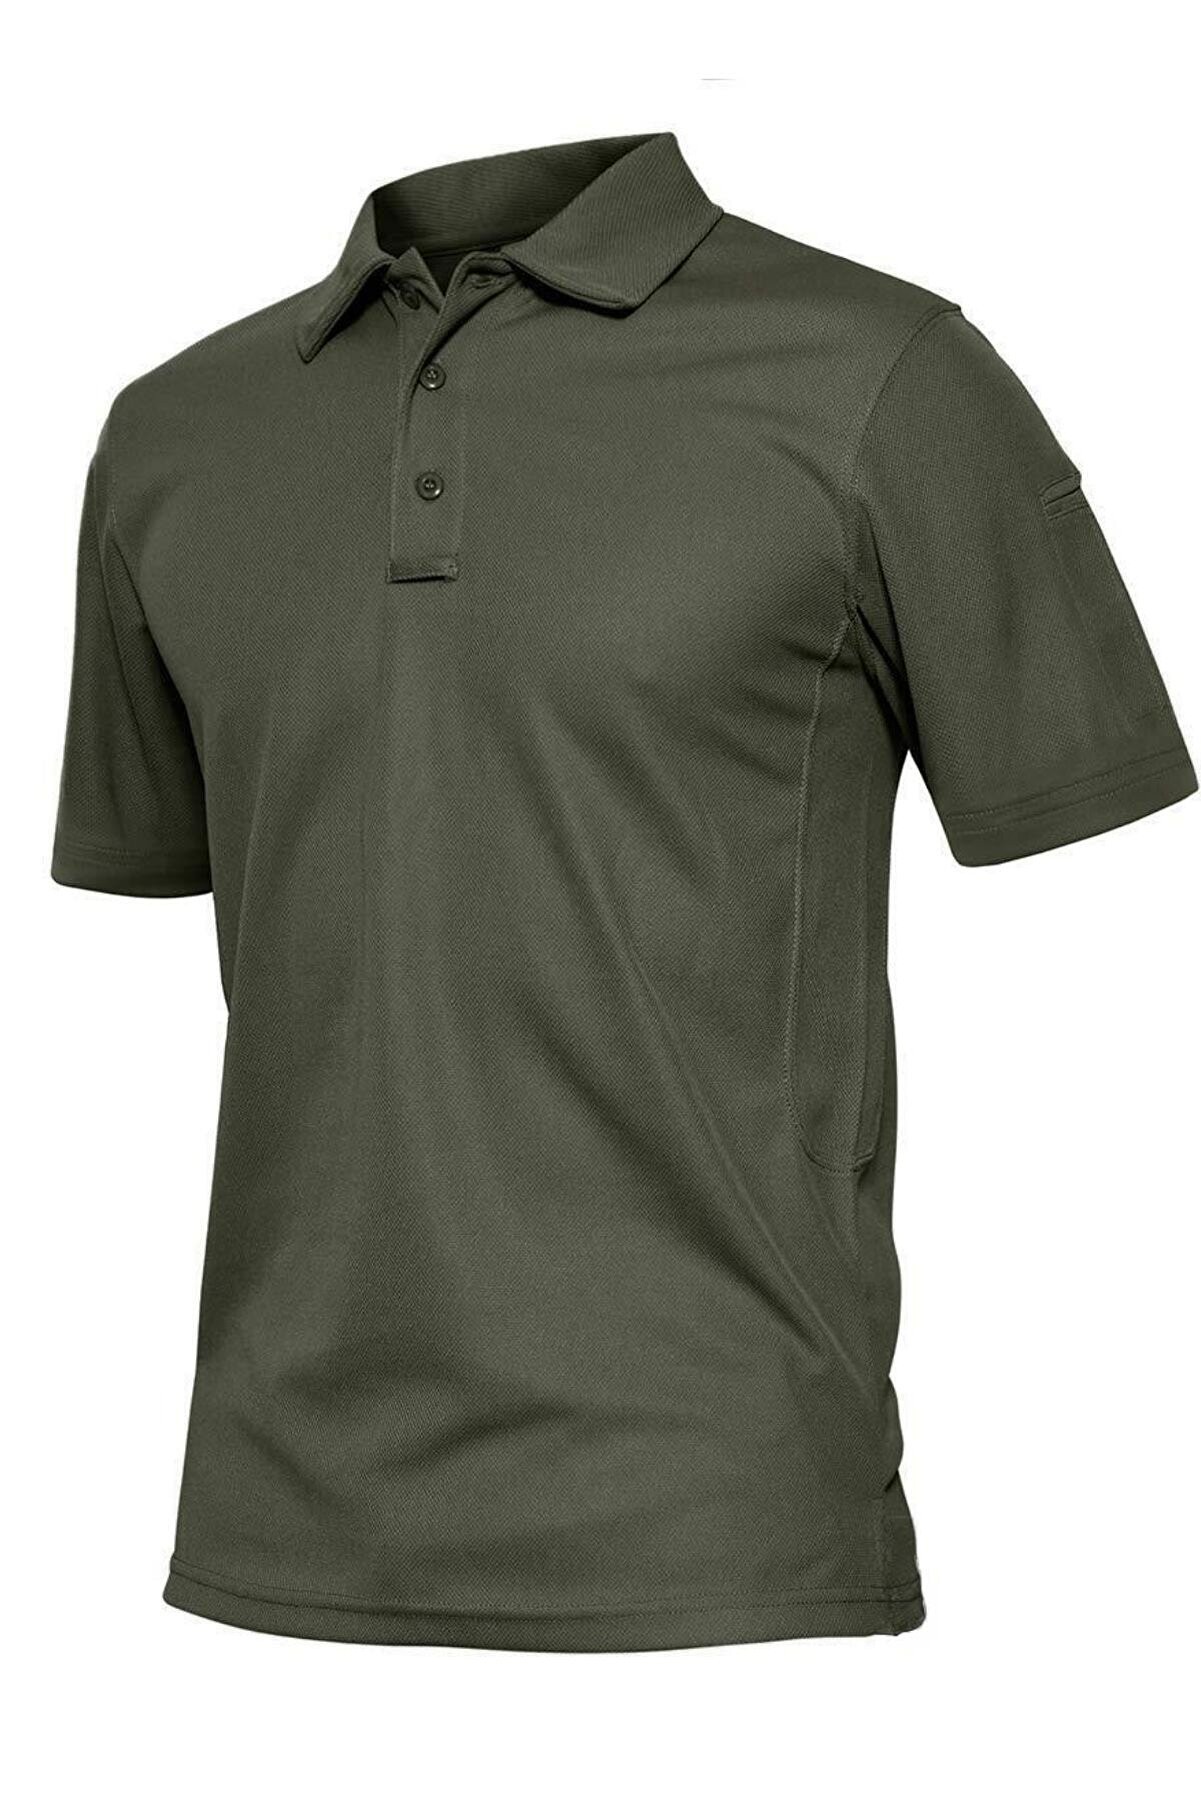 Ghassy Co. Erkek Taktik Polo Yaka Gömlek Hızlı Kuruma Nem Emici Performans Pique Jersey Golf T-shirt - Haki